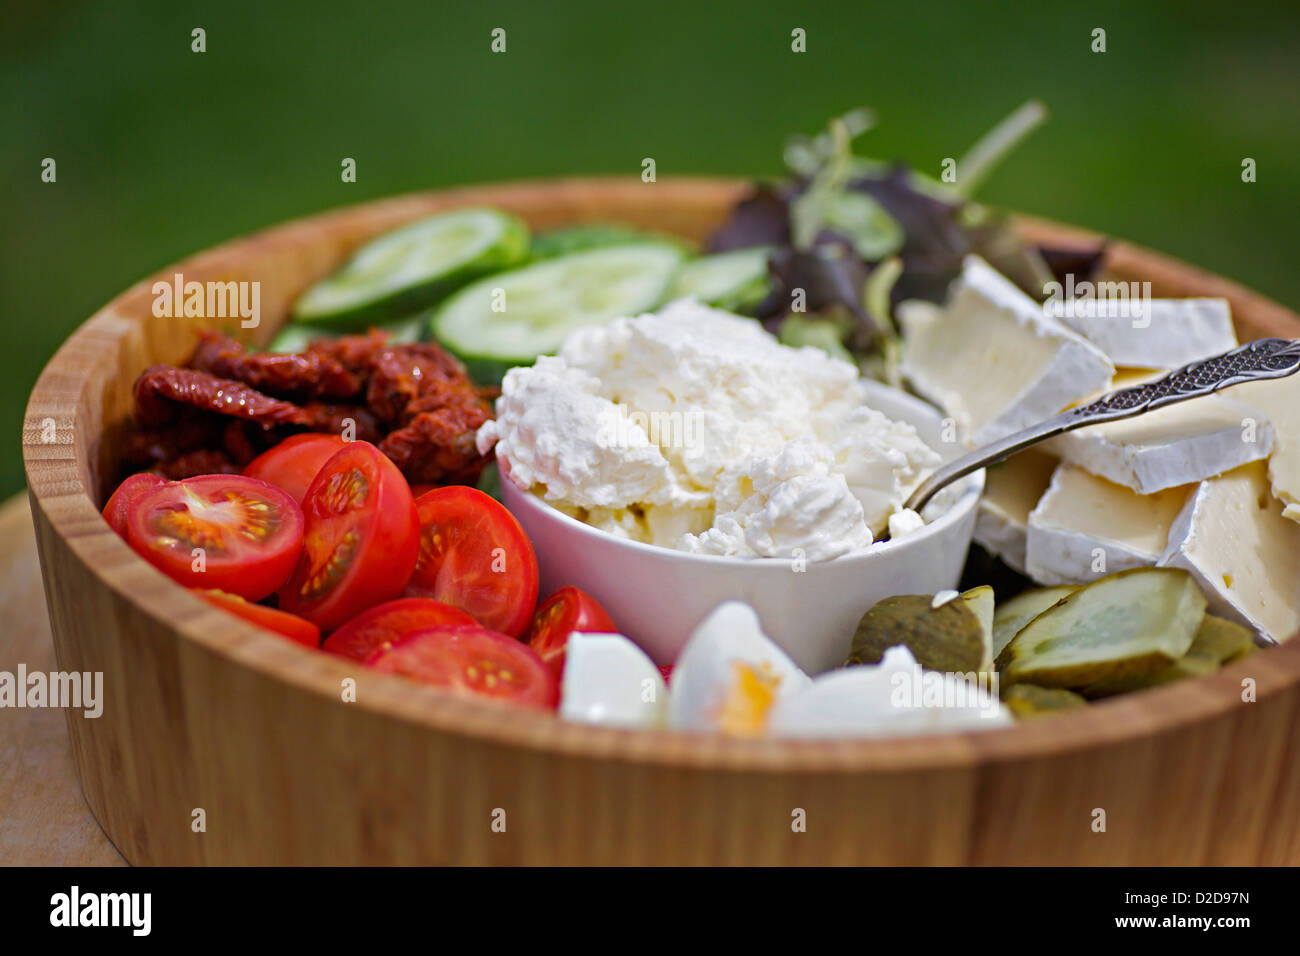 Un saladier en bois remplis de divers légumes et de fromages Banque D'Images